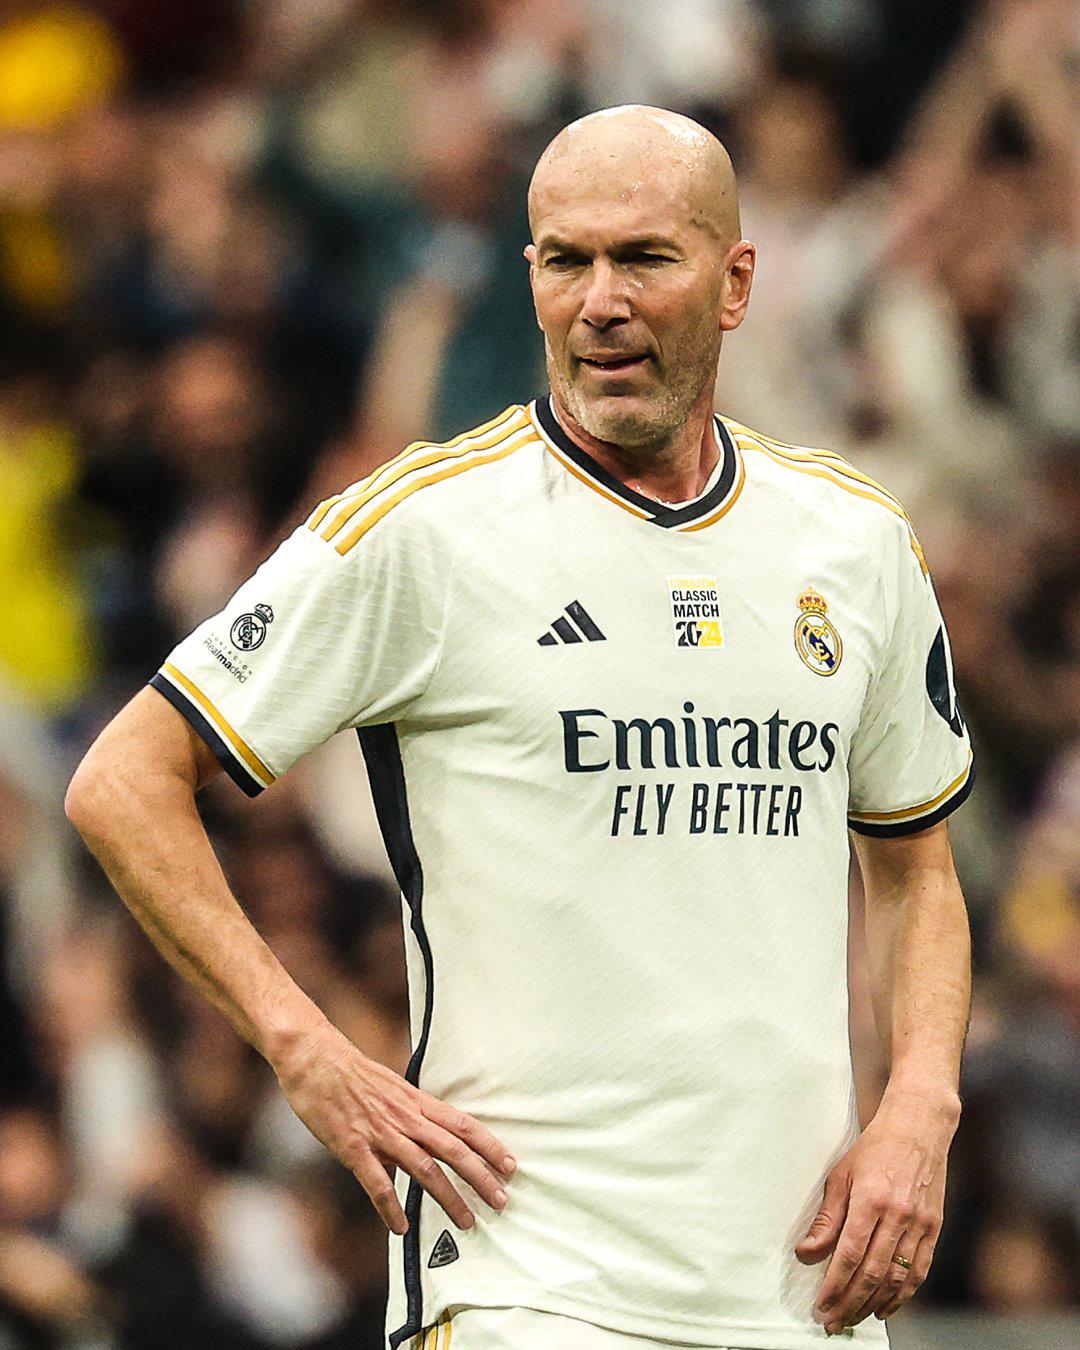 Lo de Zidane es una burrada: la increíble técnica que muestra ‘Zizou’ a sus 51 años; “Que placer visiual lo que hace”